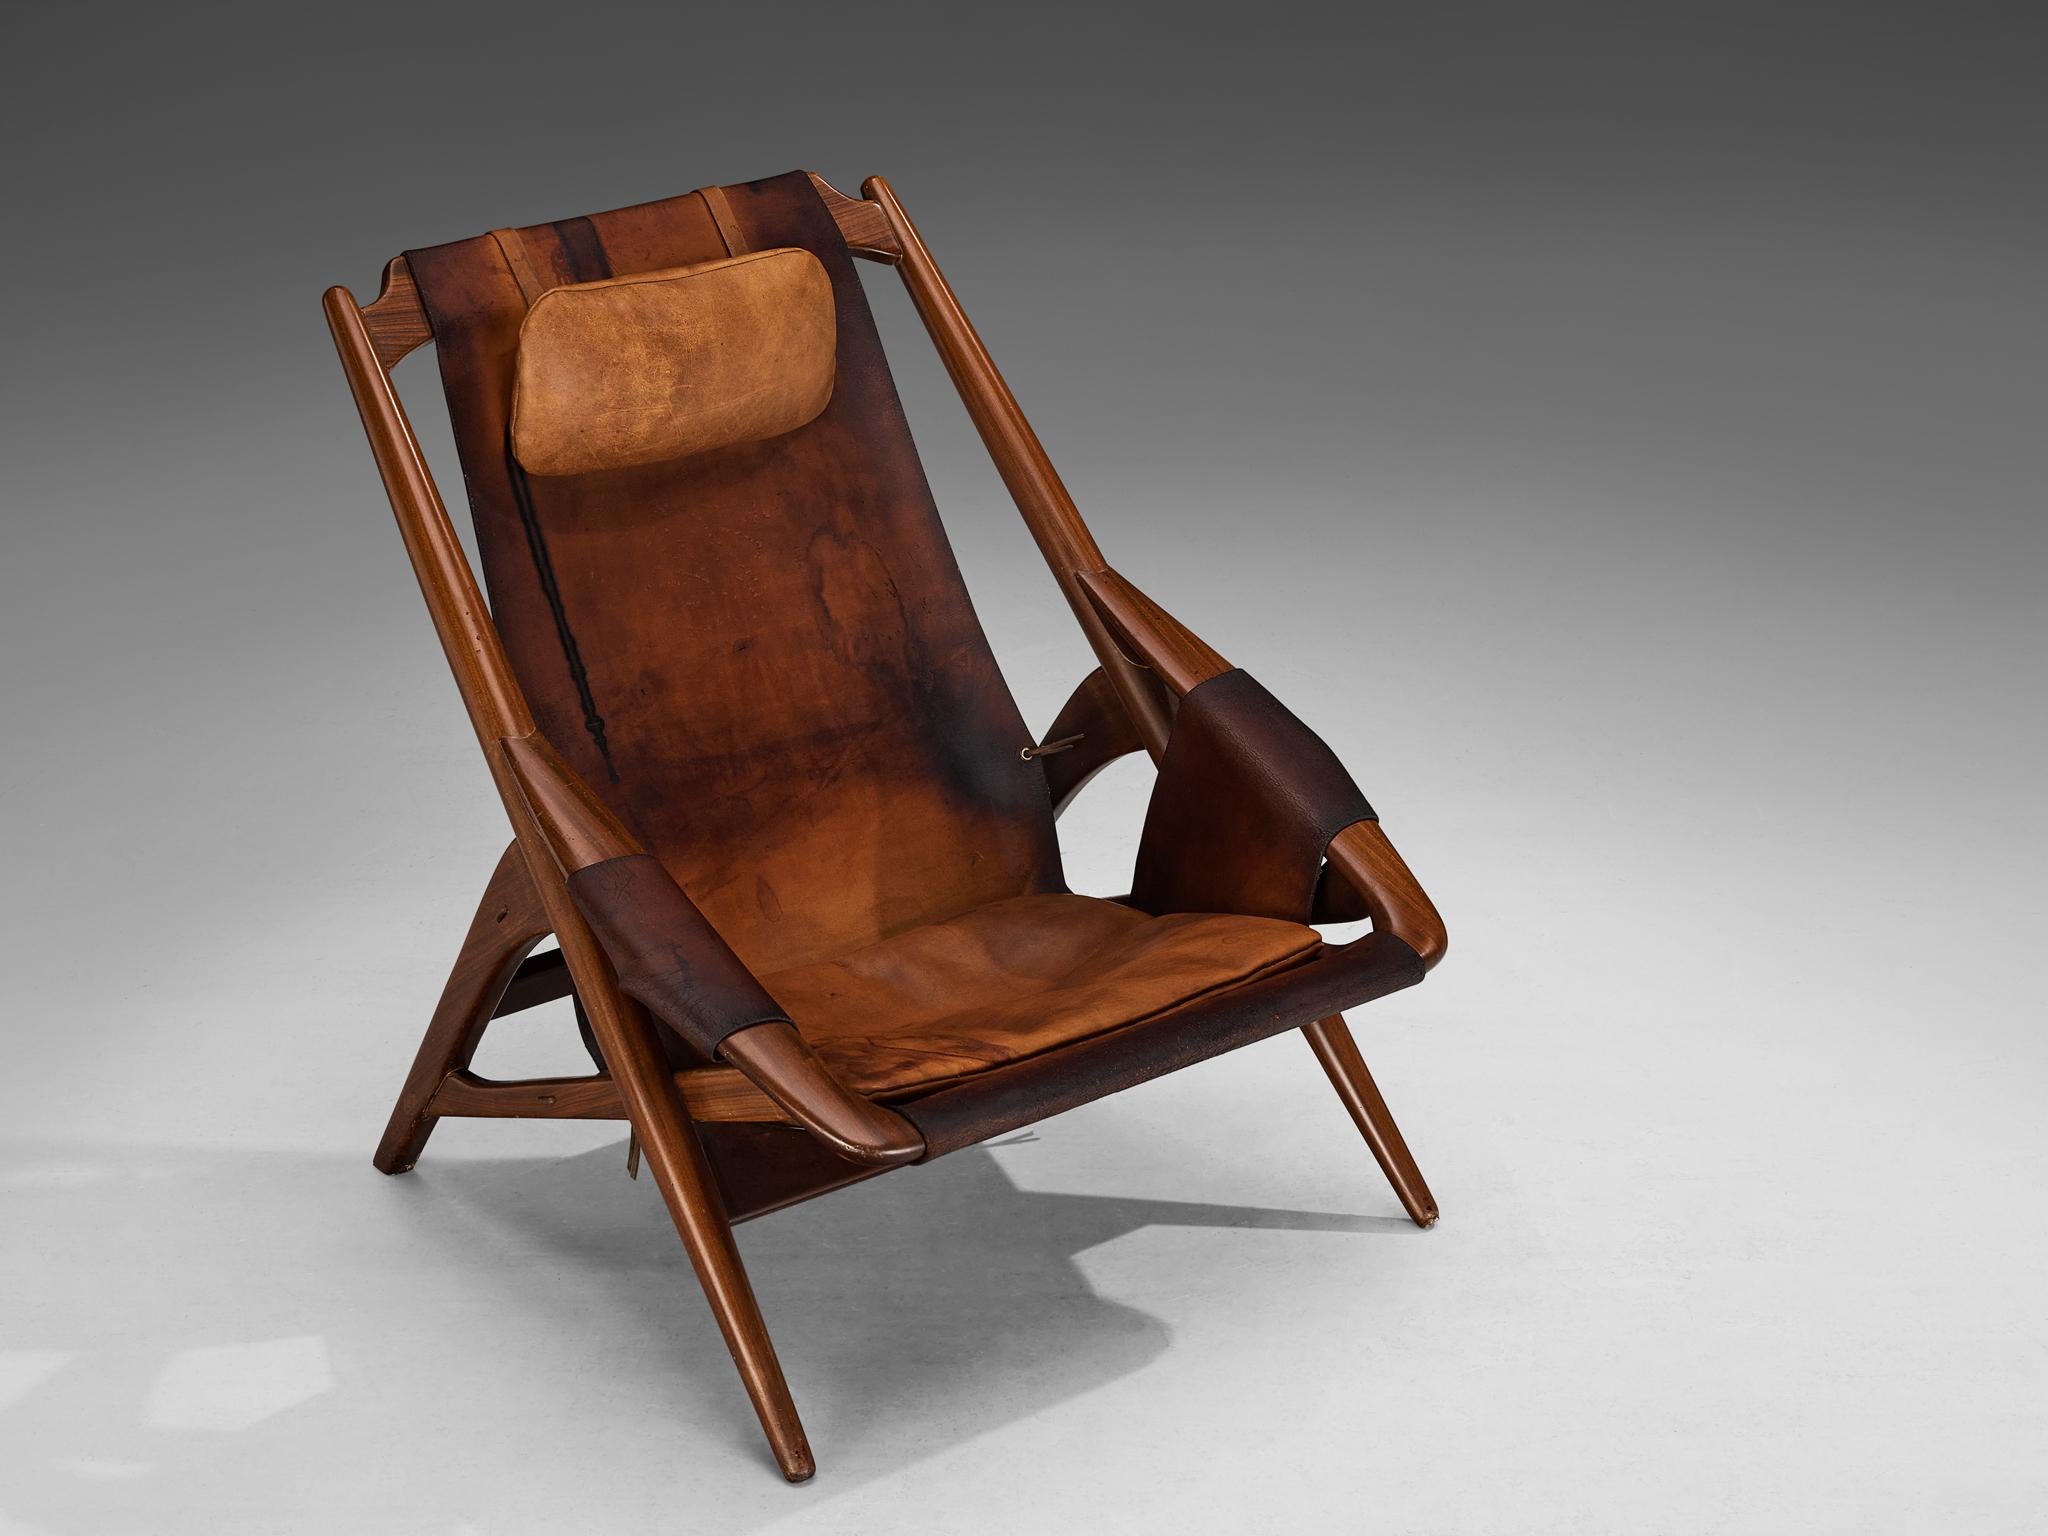 W. Andersag, chaise longue, teck, cuir de selle, Italie, années 1960

Un fauteuil exquis conçu par W.D. Ansersag. Son design est empreint d'un dynamisme frappant, souligné par des lignes acérées évidentes dans le cadre en bois. La chaise rappelle